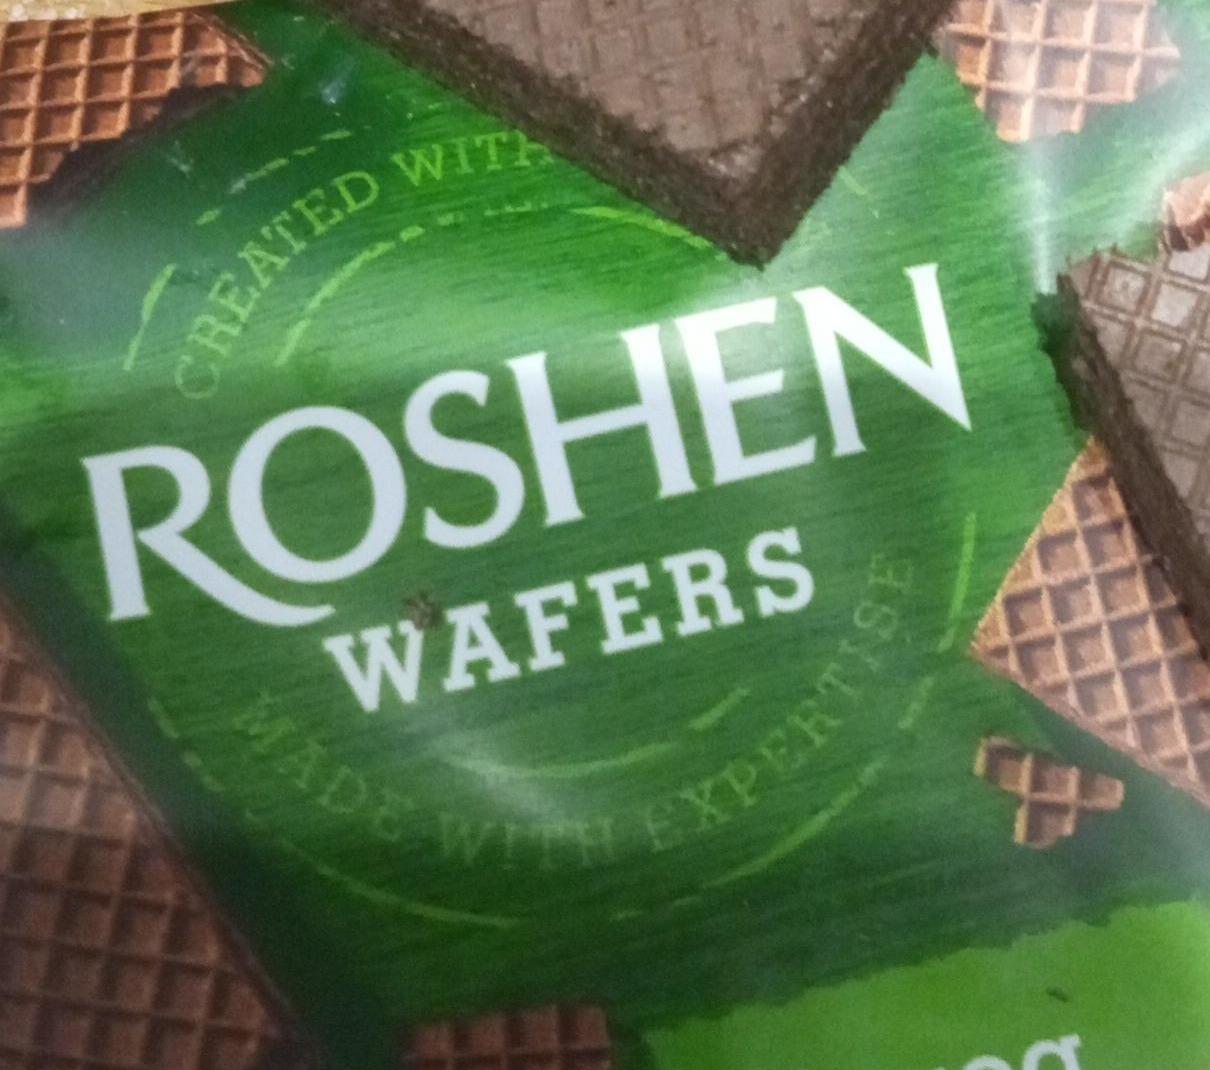 Fotografie - wafers choco Roshen